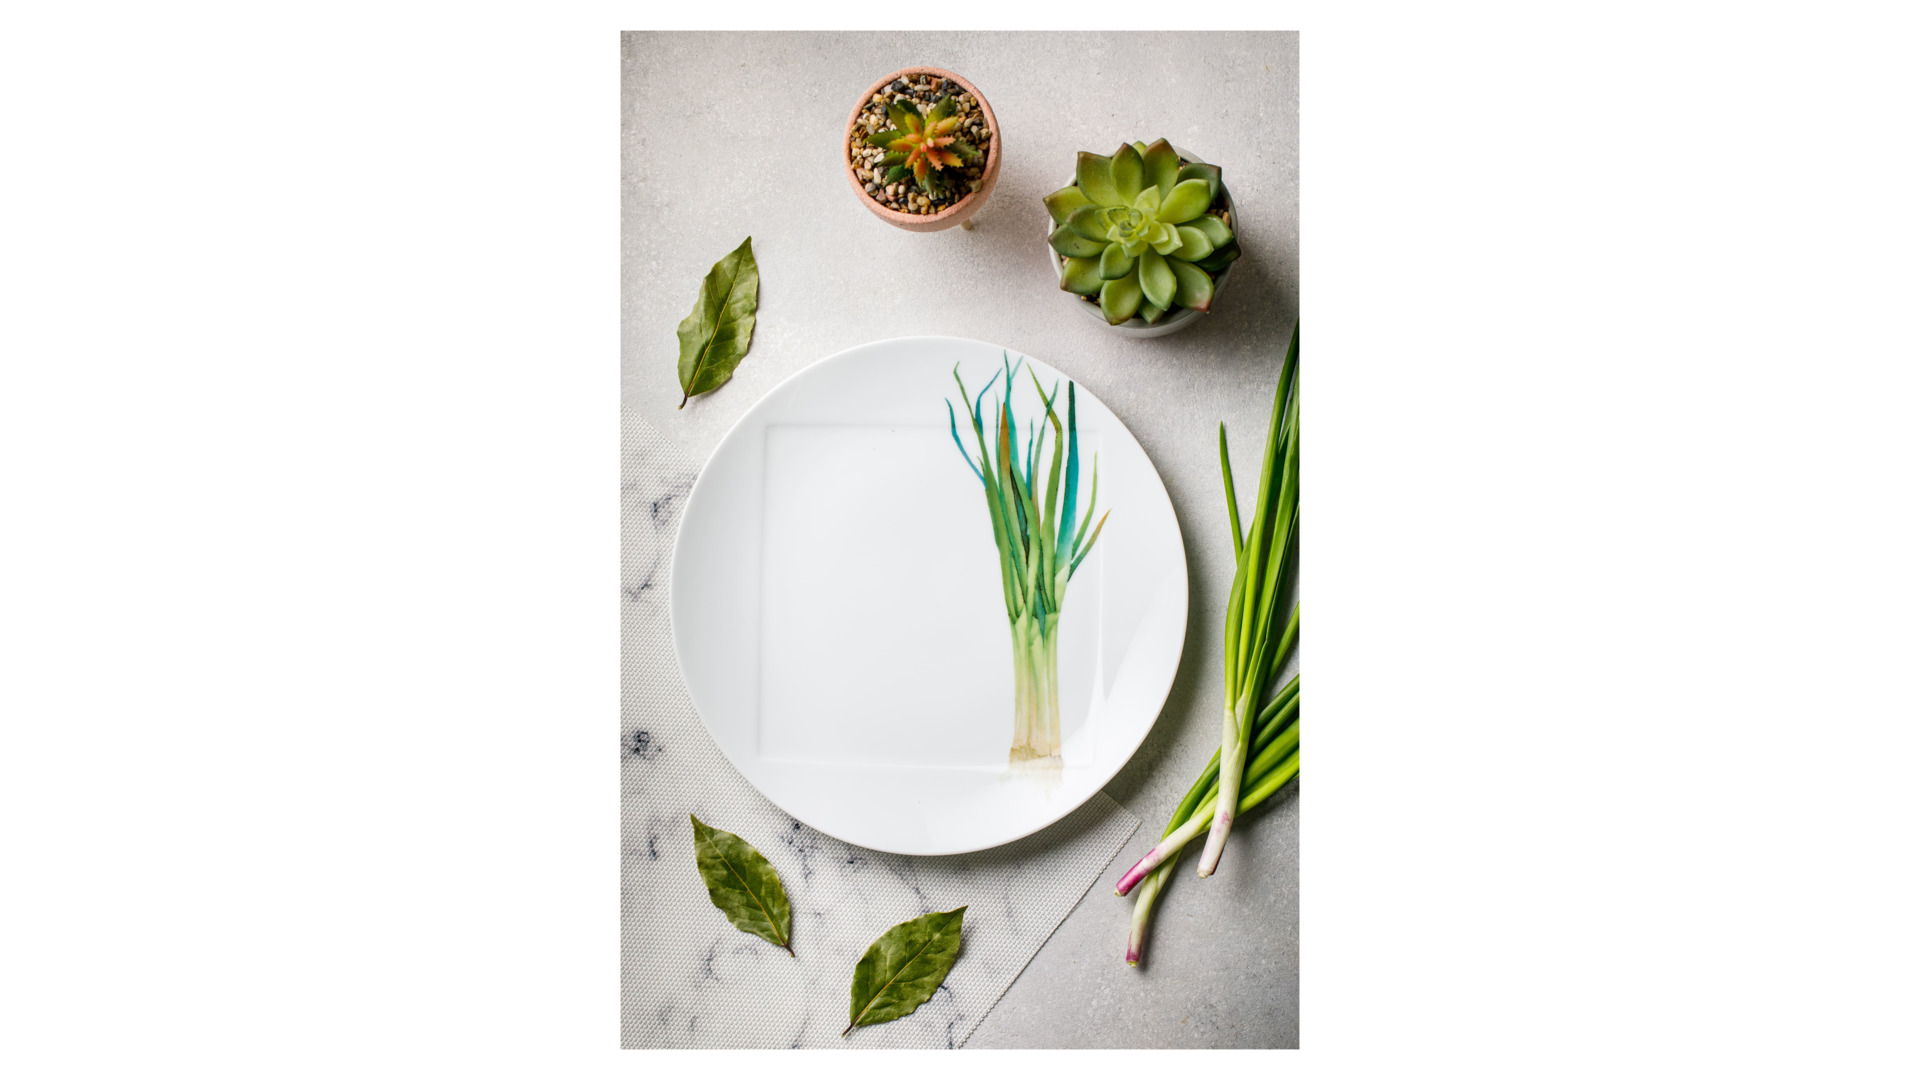 Тарелка обеденная Noritake Овощной букет Зеленый лук 27 см